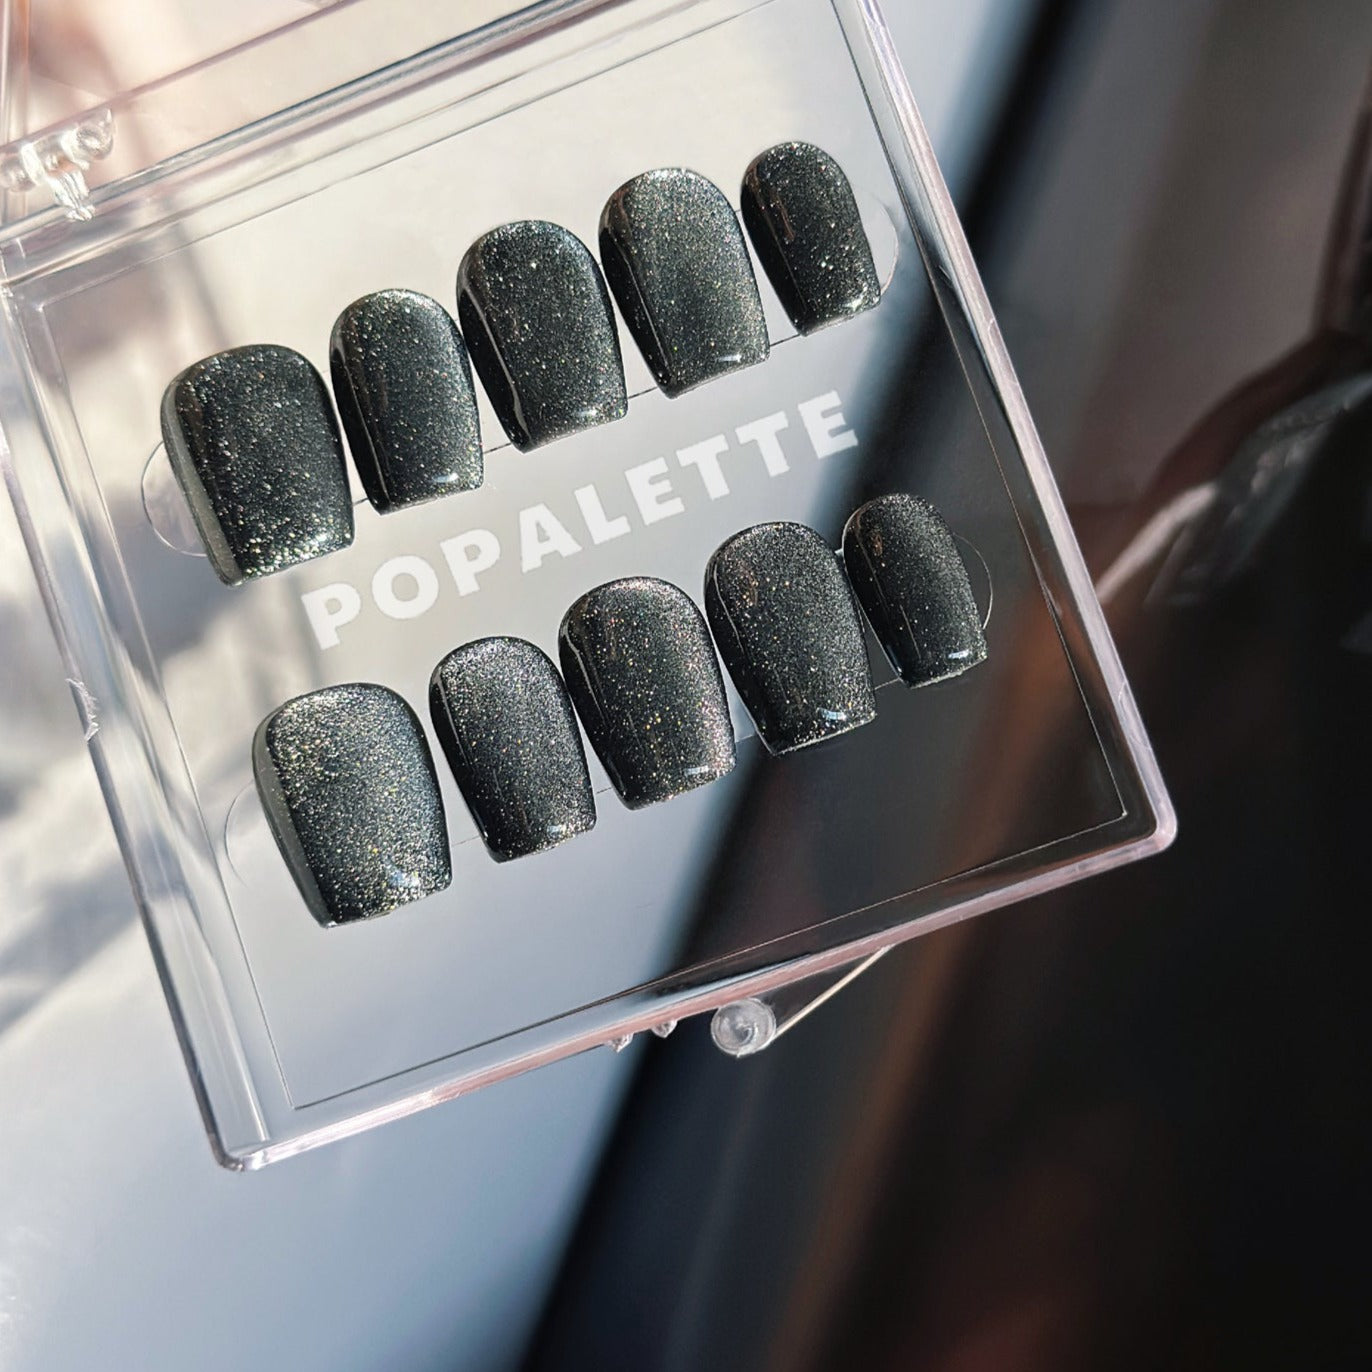 POPALETTE Cat Eye Black Glitter Short Length - 100% Handmade Press On Nails